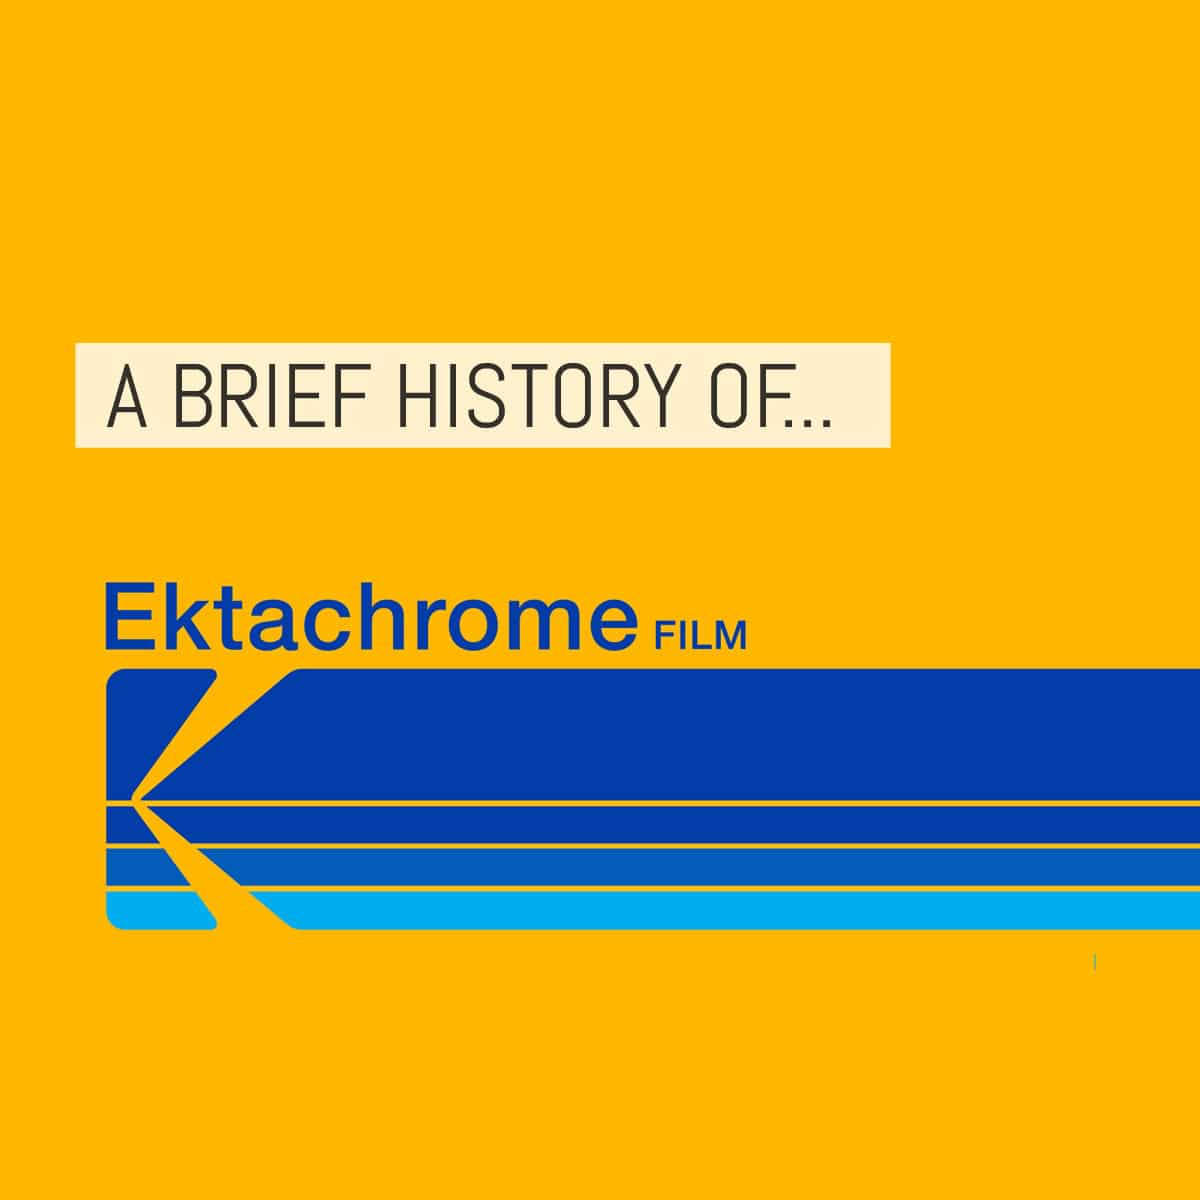 Cover - A brief history of Kodak EKTACHROME